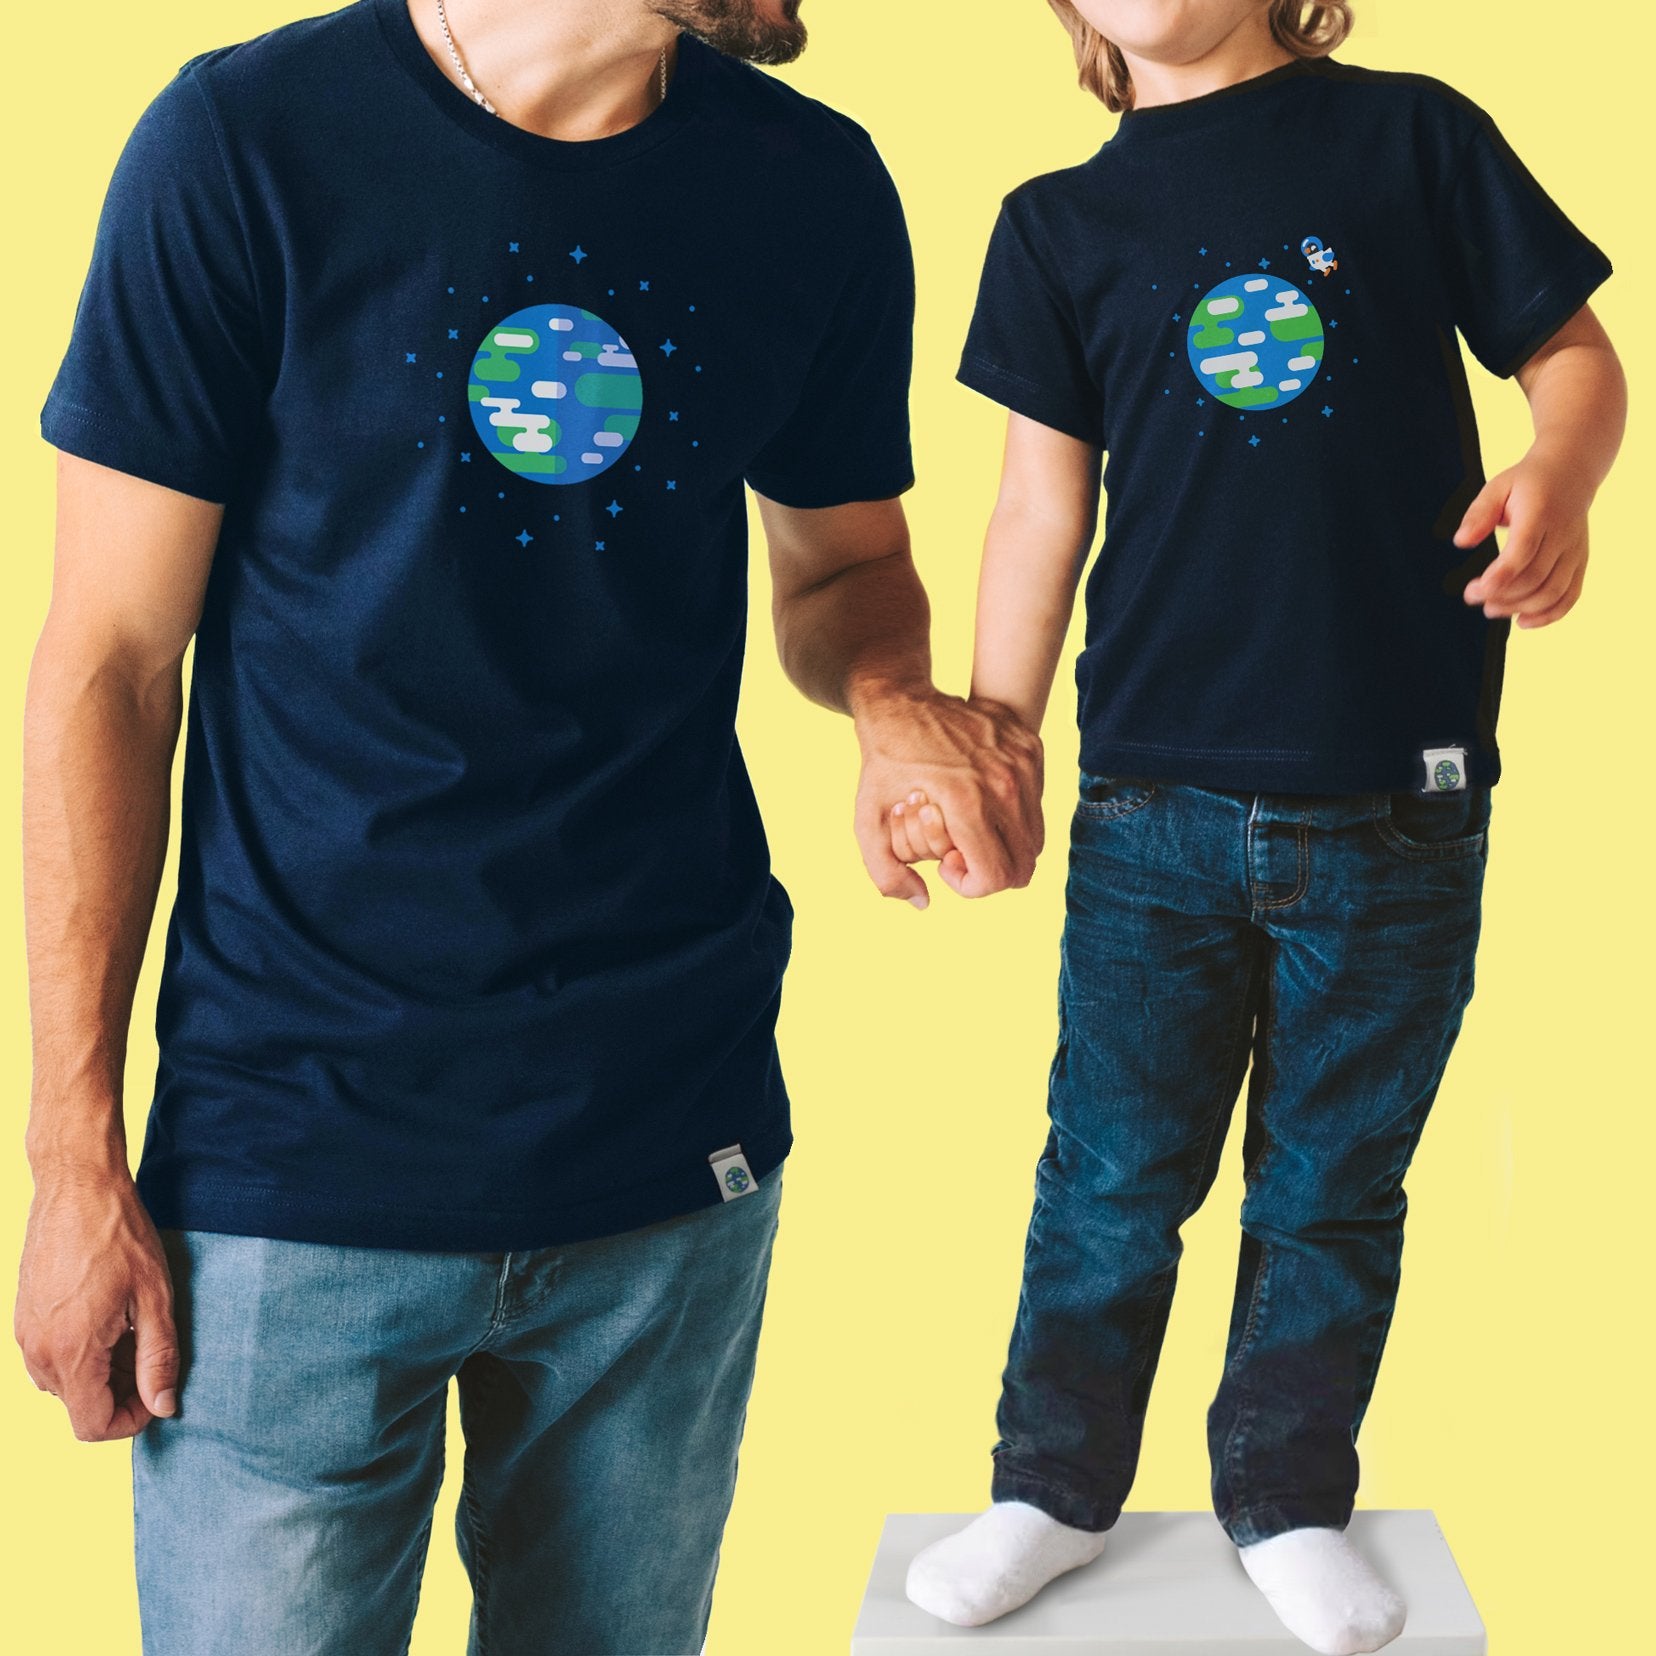 Earth T-Shirt Kids – – kurzgesagt the Official Merch shop